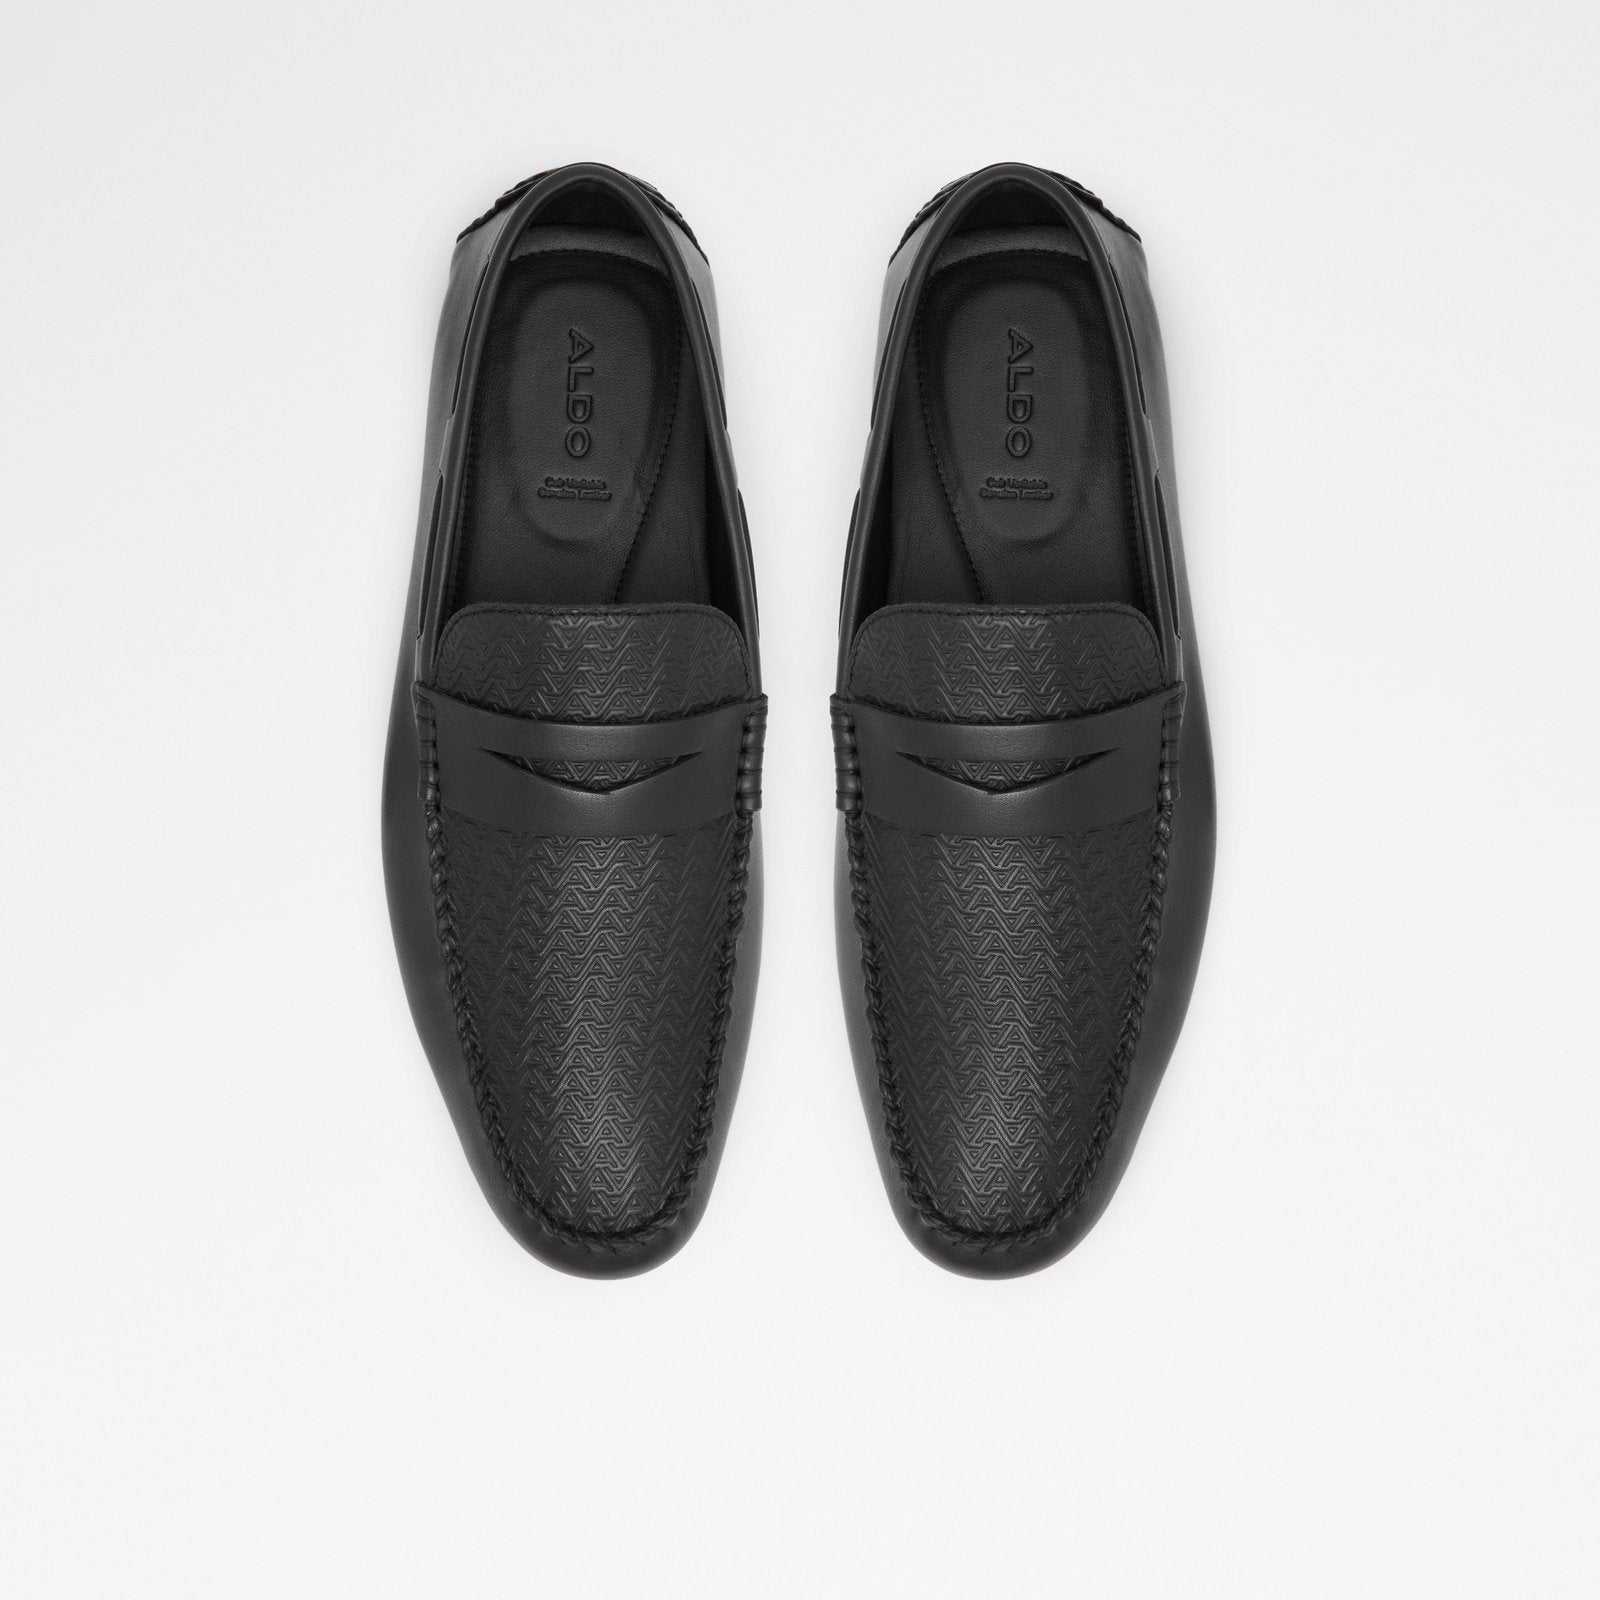 Bristow Men Shoes - Black - ALDO KSA